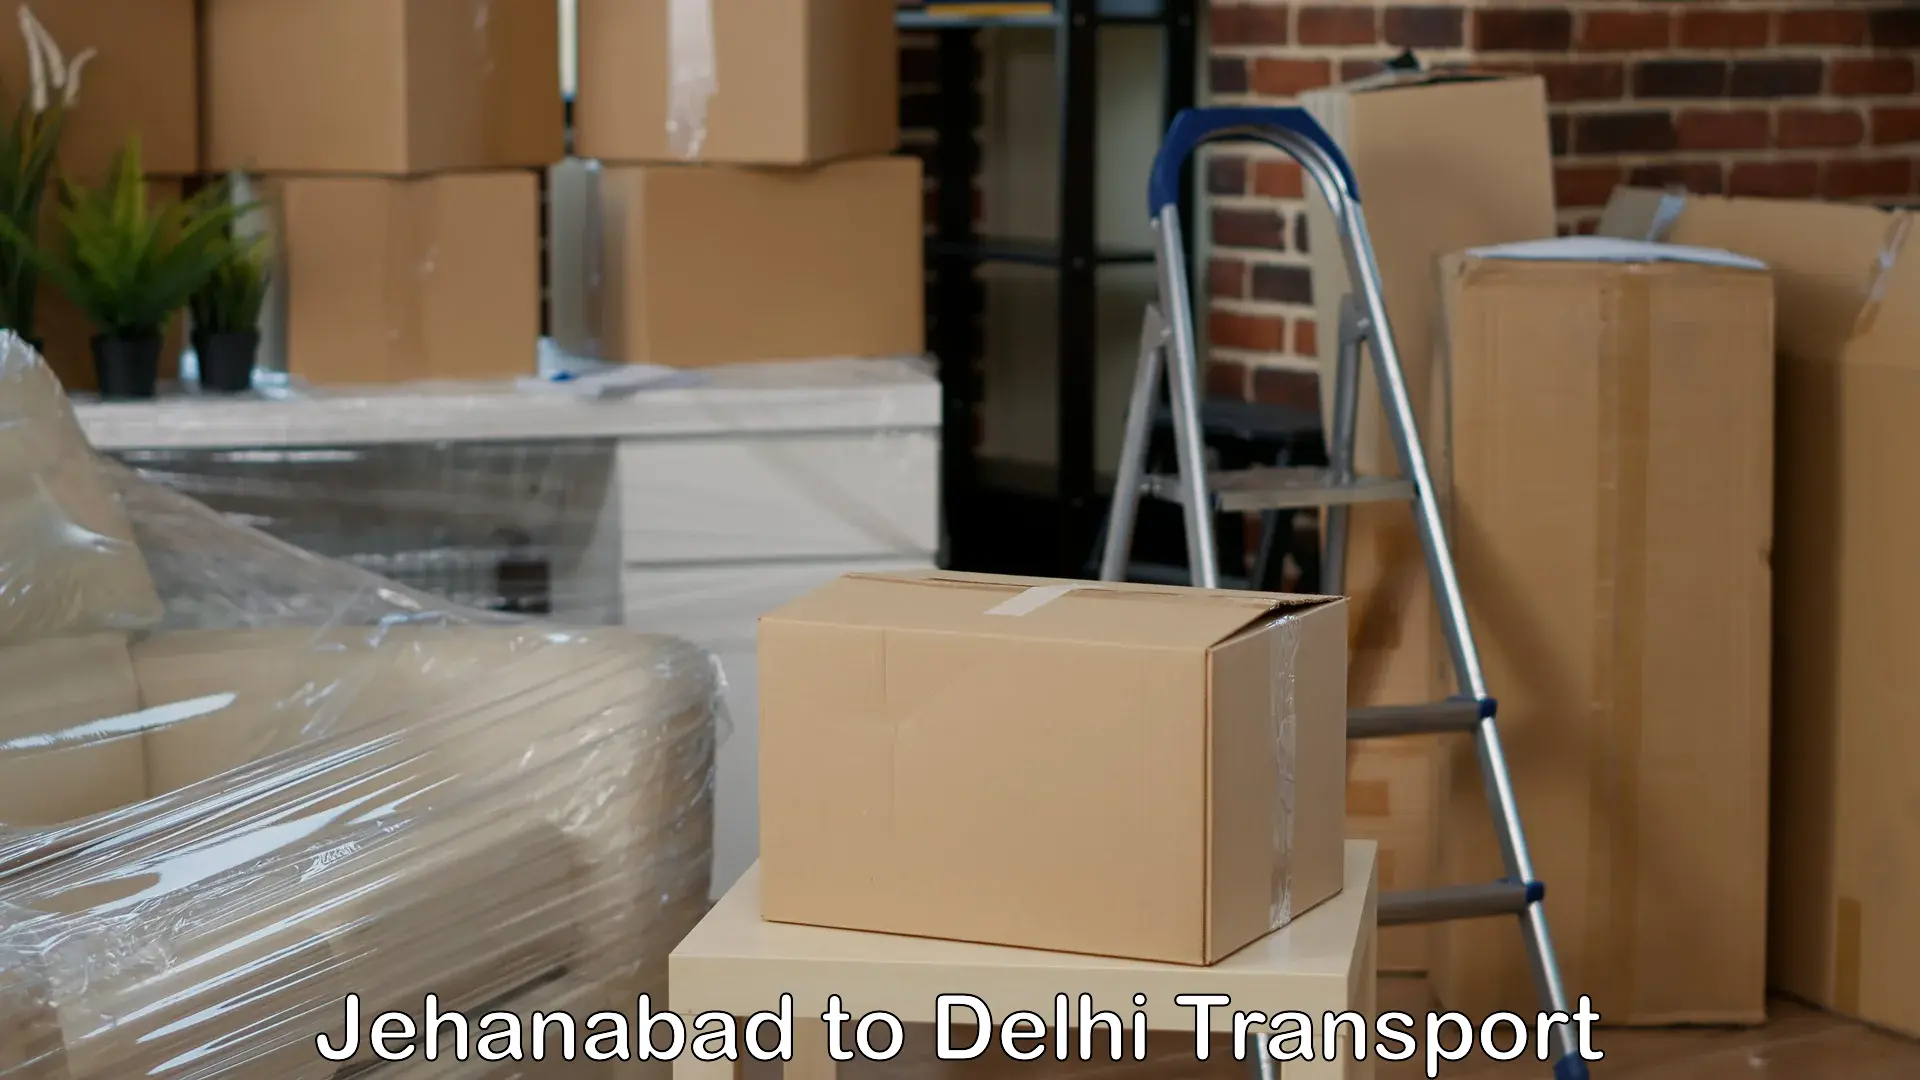 Cargo train transport services Jehanabad to Jamia Millia Islamia New Delhi